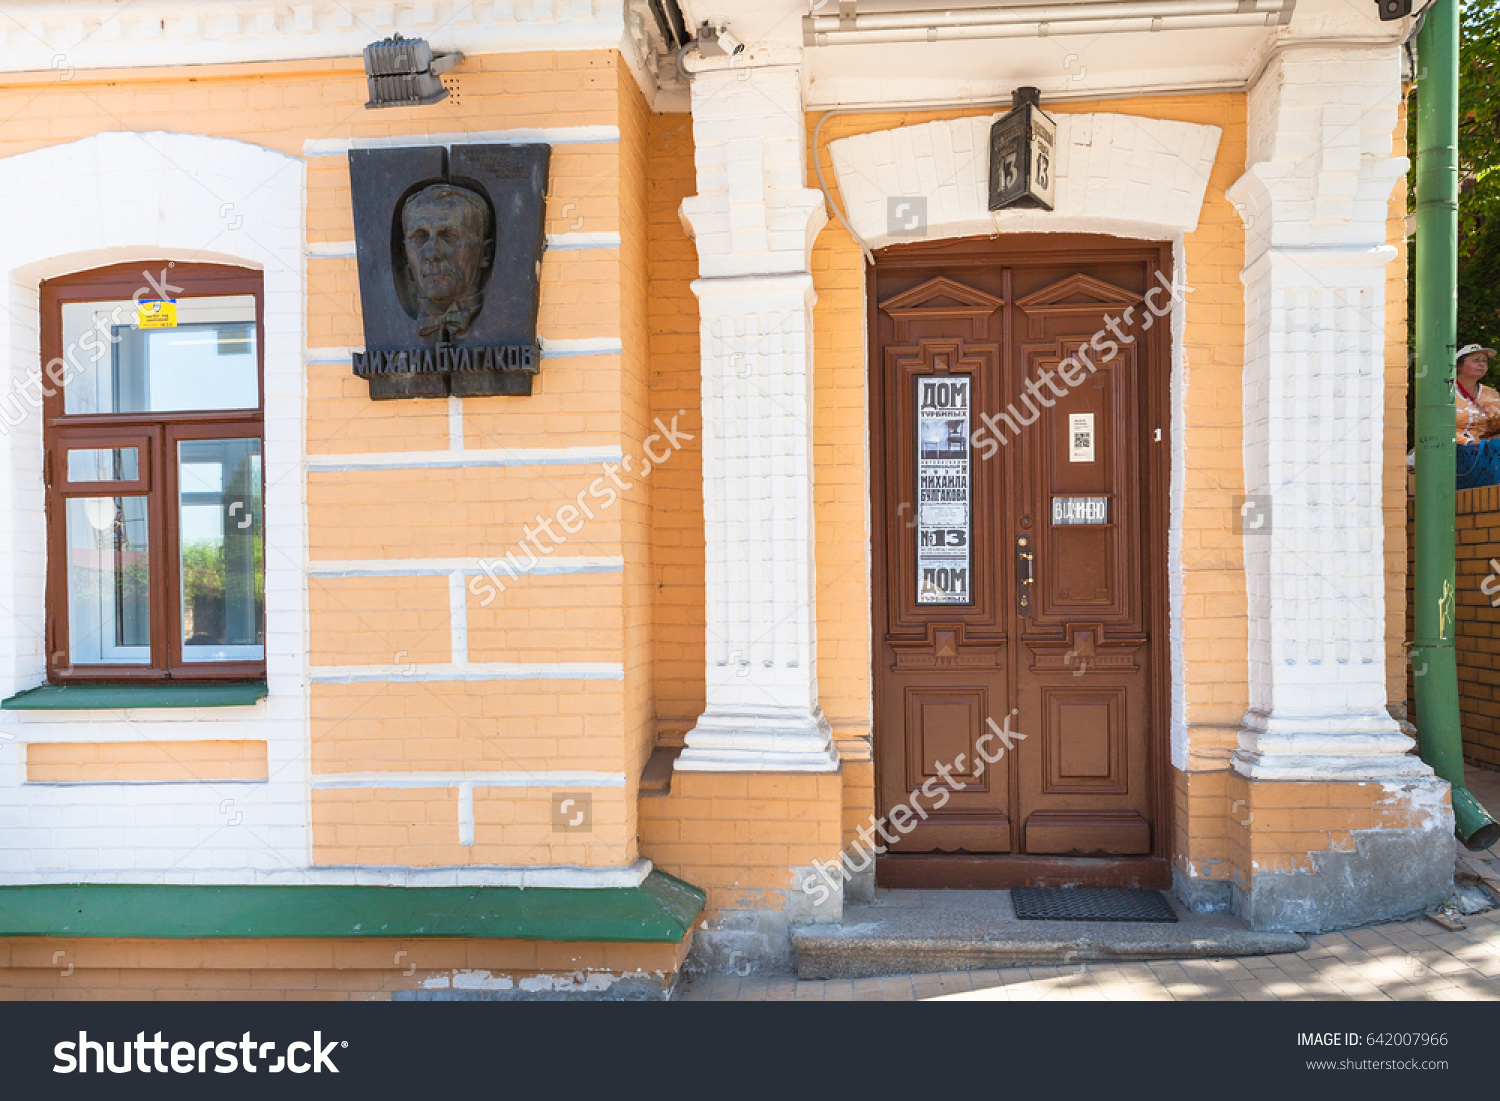 stock-photo-kiev-ukraine-may-entrance-in-literature-memorial-museum-to-mikhail-bulgakov-bulgakov-642007966